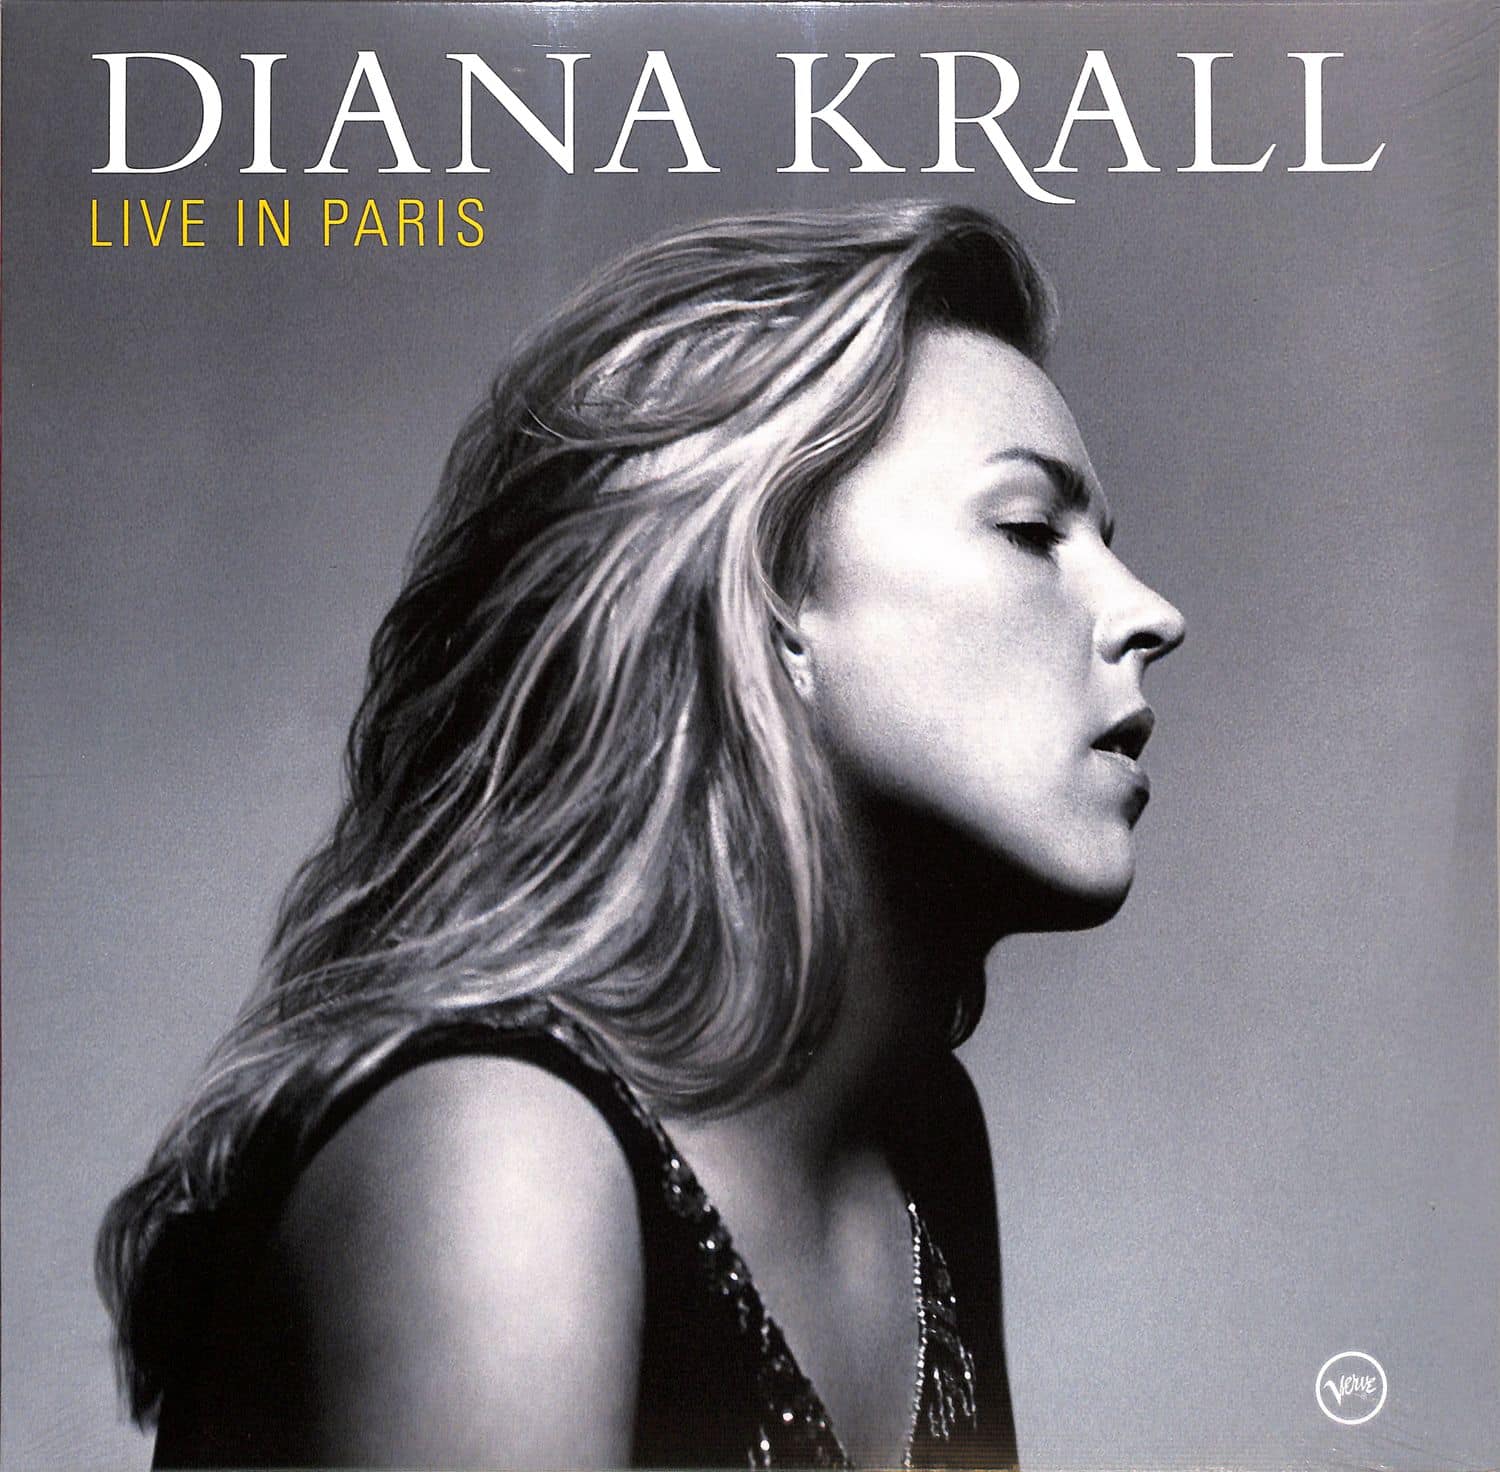 Diana Krall - LIVE IN PARIS 